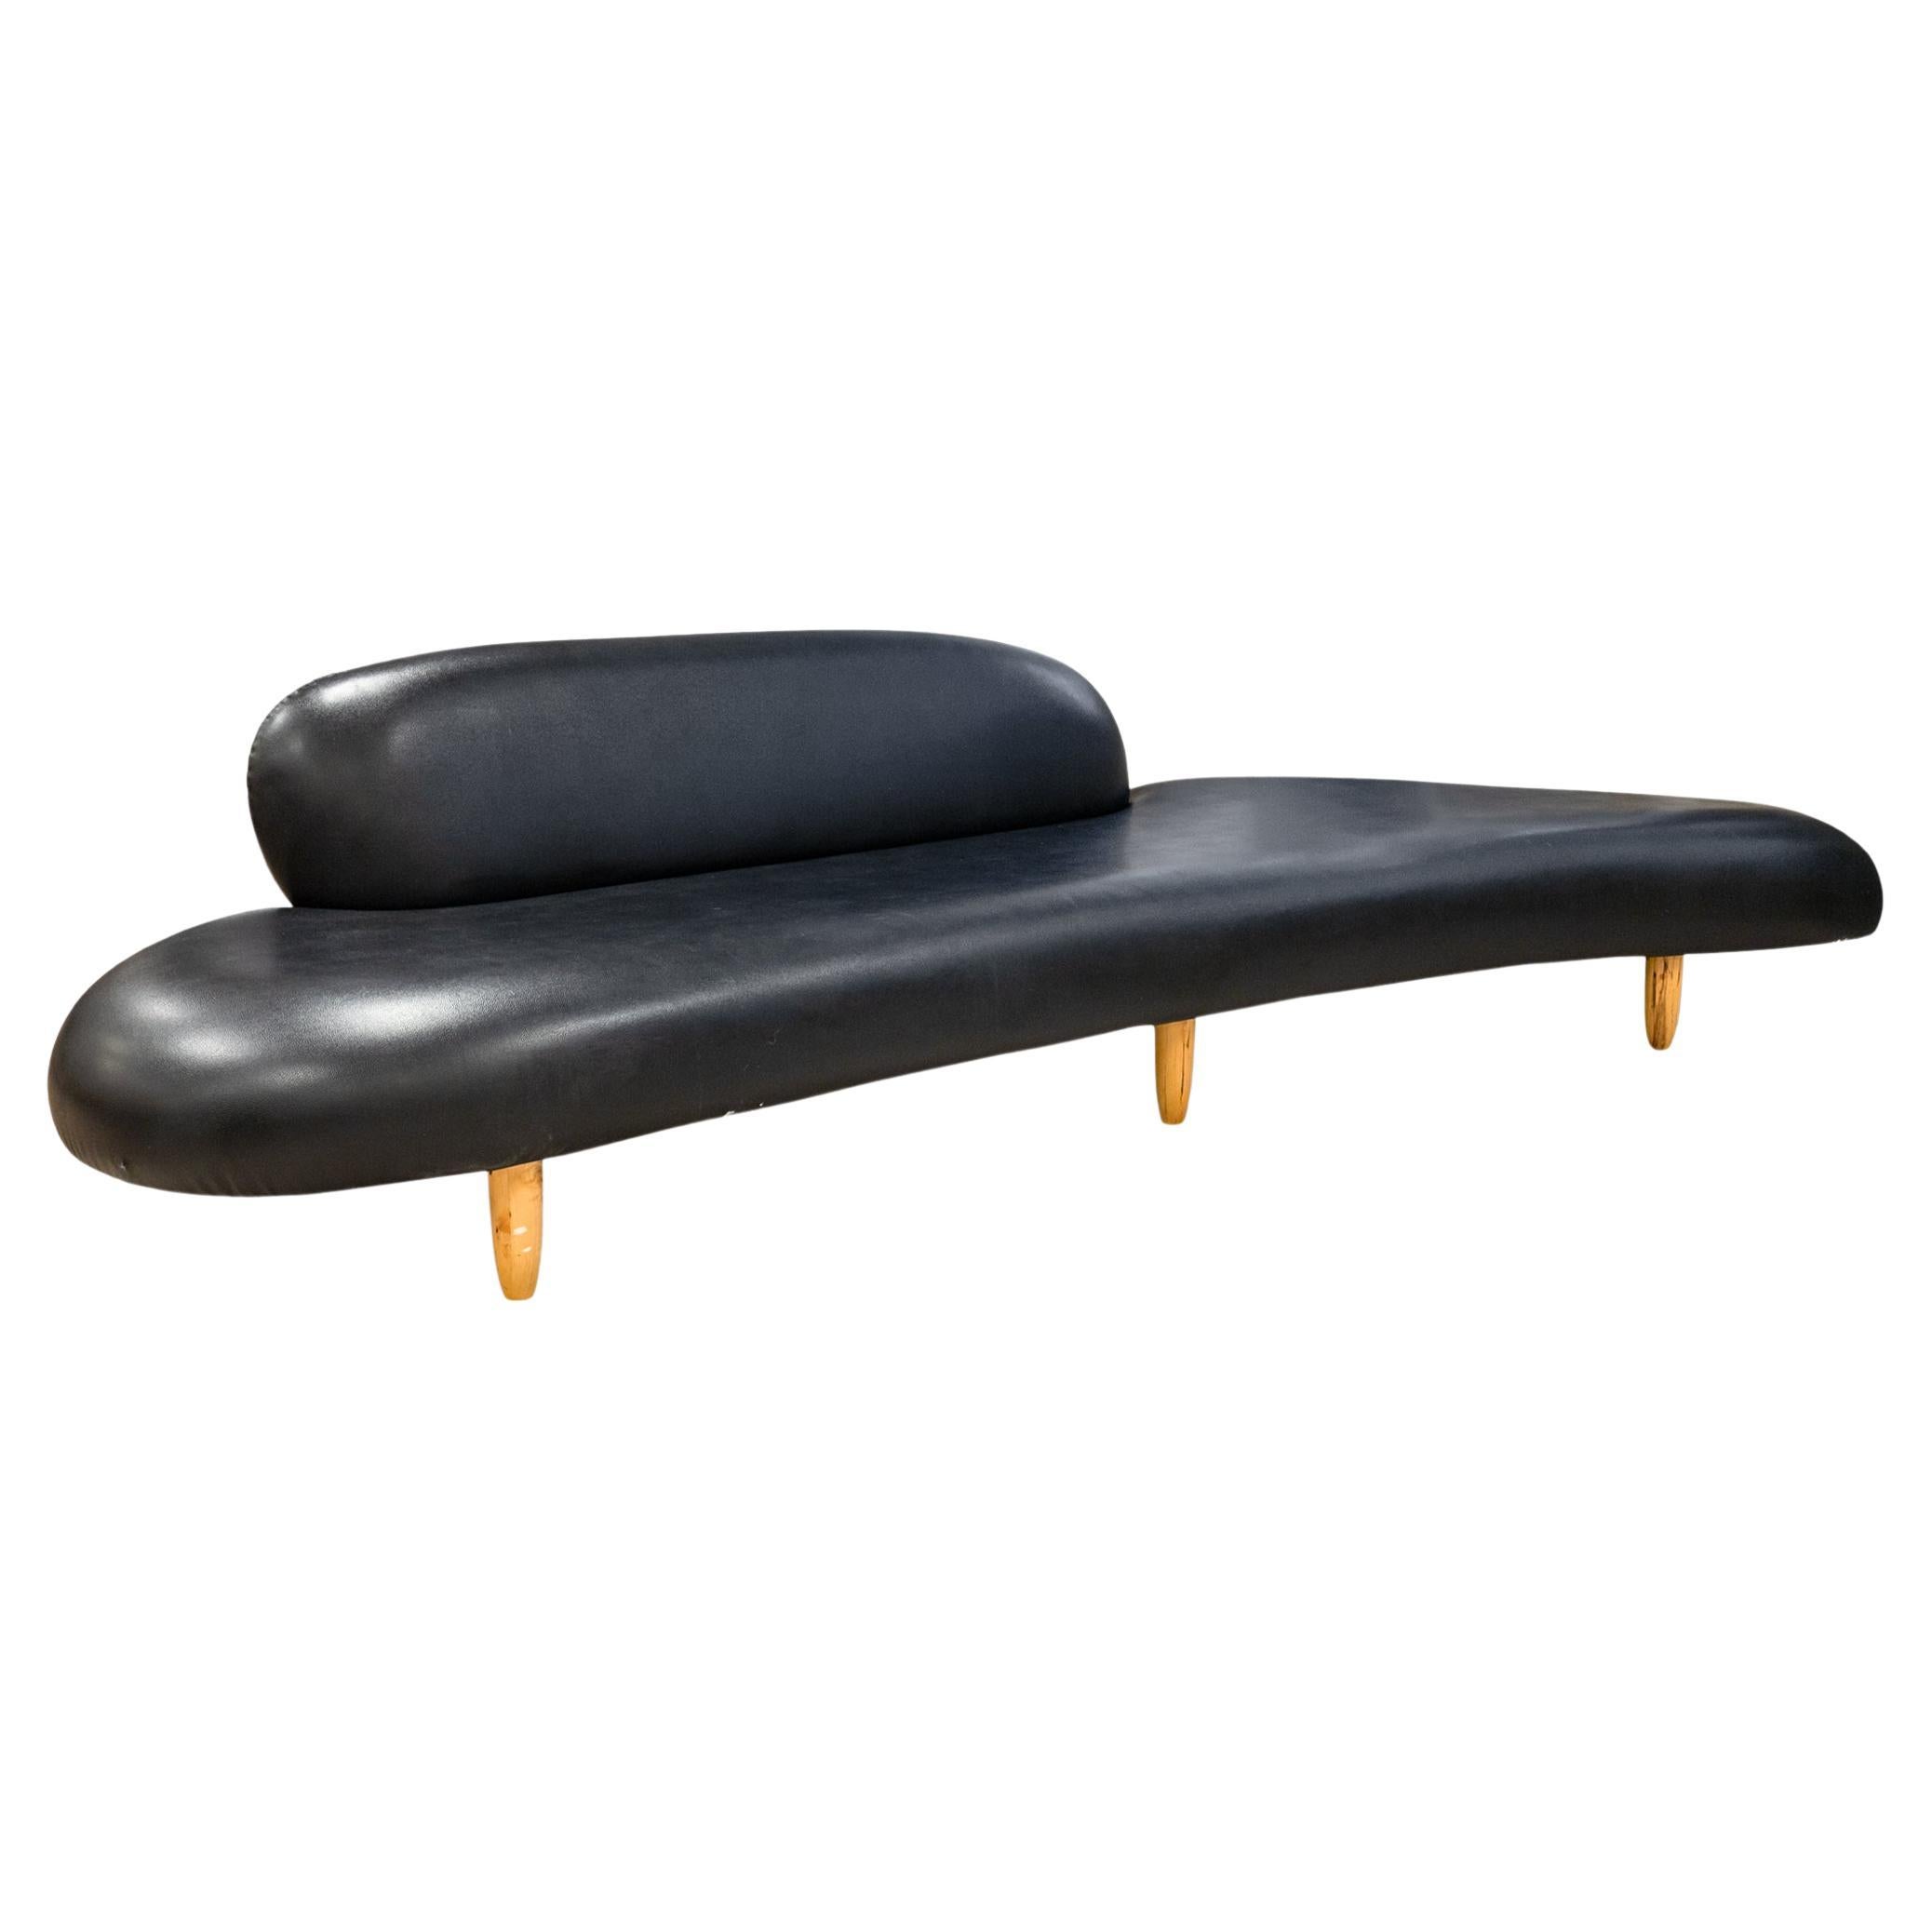 Ein freies Sofa und eine Ottomane im Stil von Isamu Noguchi, die Vitra zugeschrieben werden. Ein beeindruckendes Stück Designgeschichte des legendären Künstlers und Designers Isamu Noguchi. Dieses Freiformsofa ist mit schwarzem Leder bezogen und hat